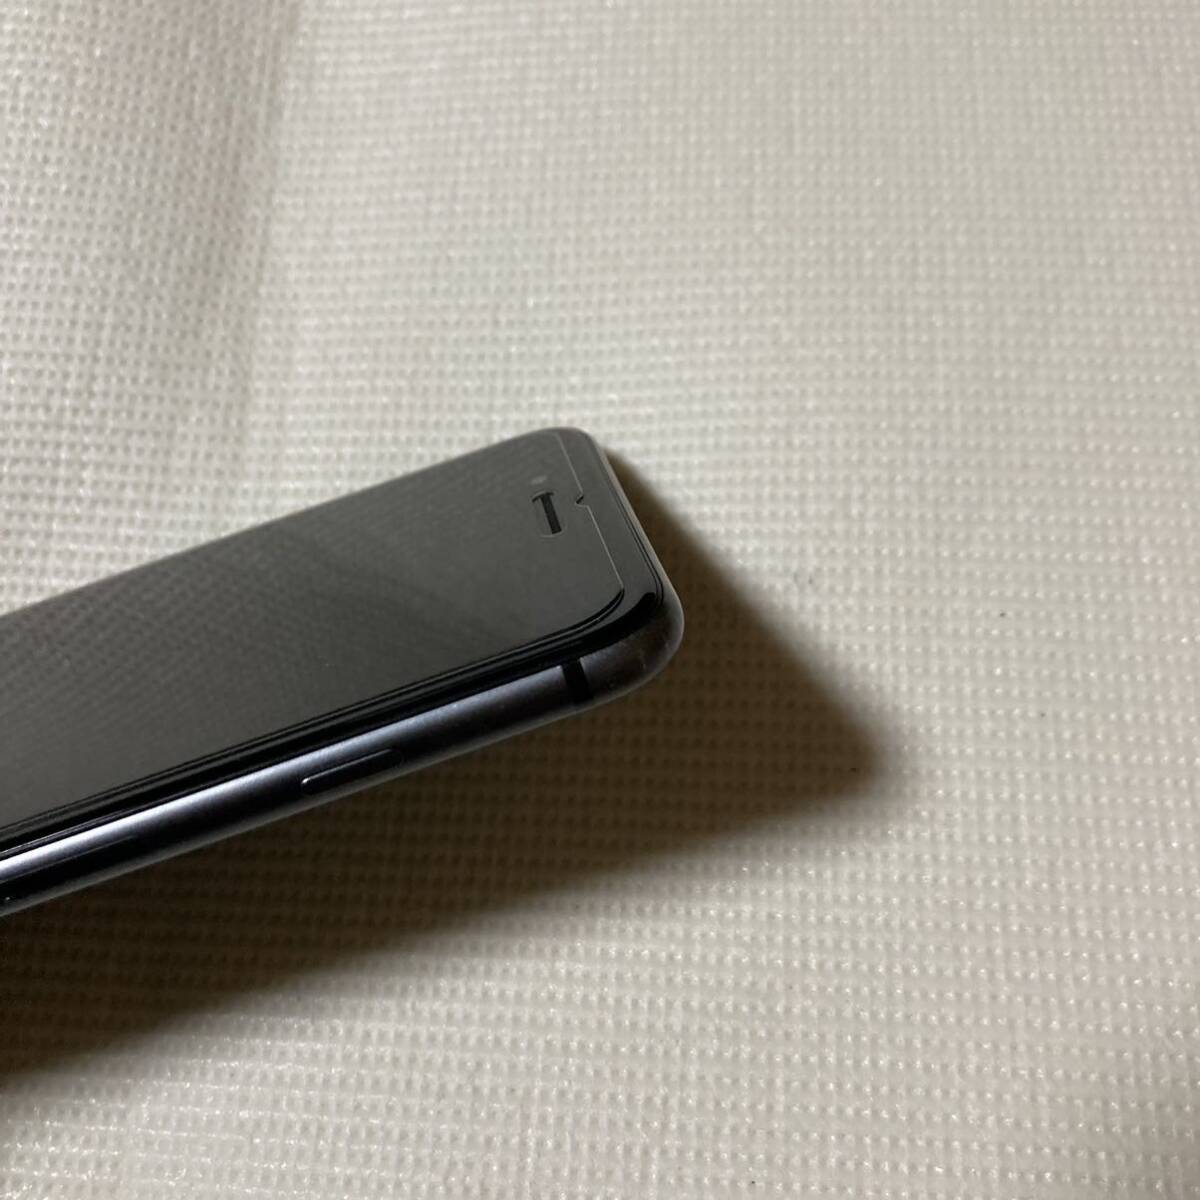 送料無料 SIMフリー iPhone8 Plus 64GB スペースグレー バッテリー最大容量100% SIMロック解除